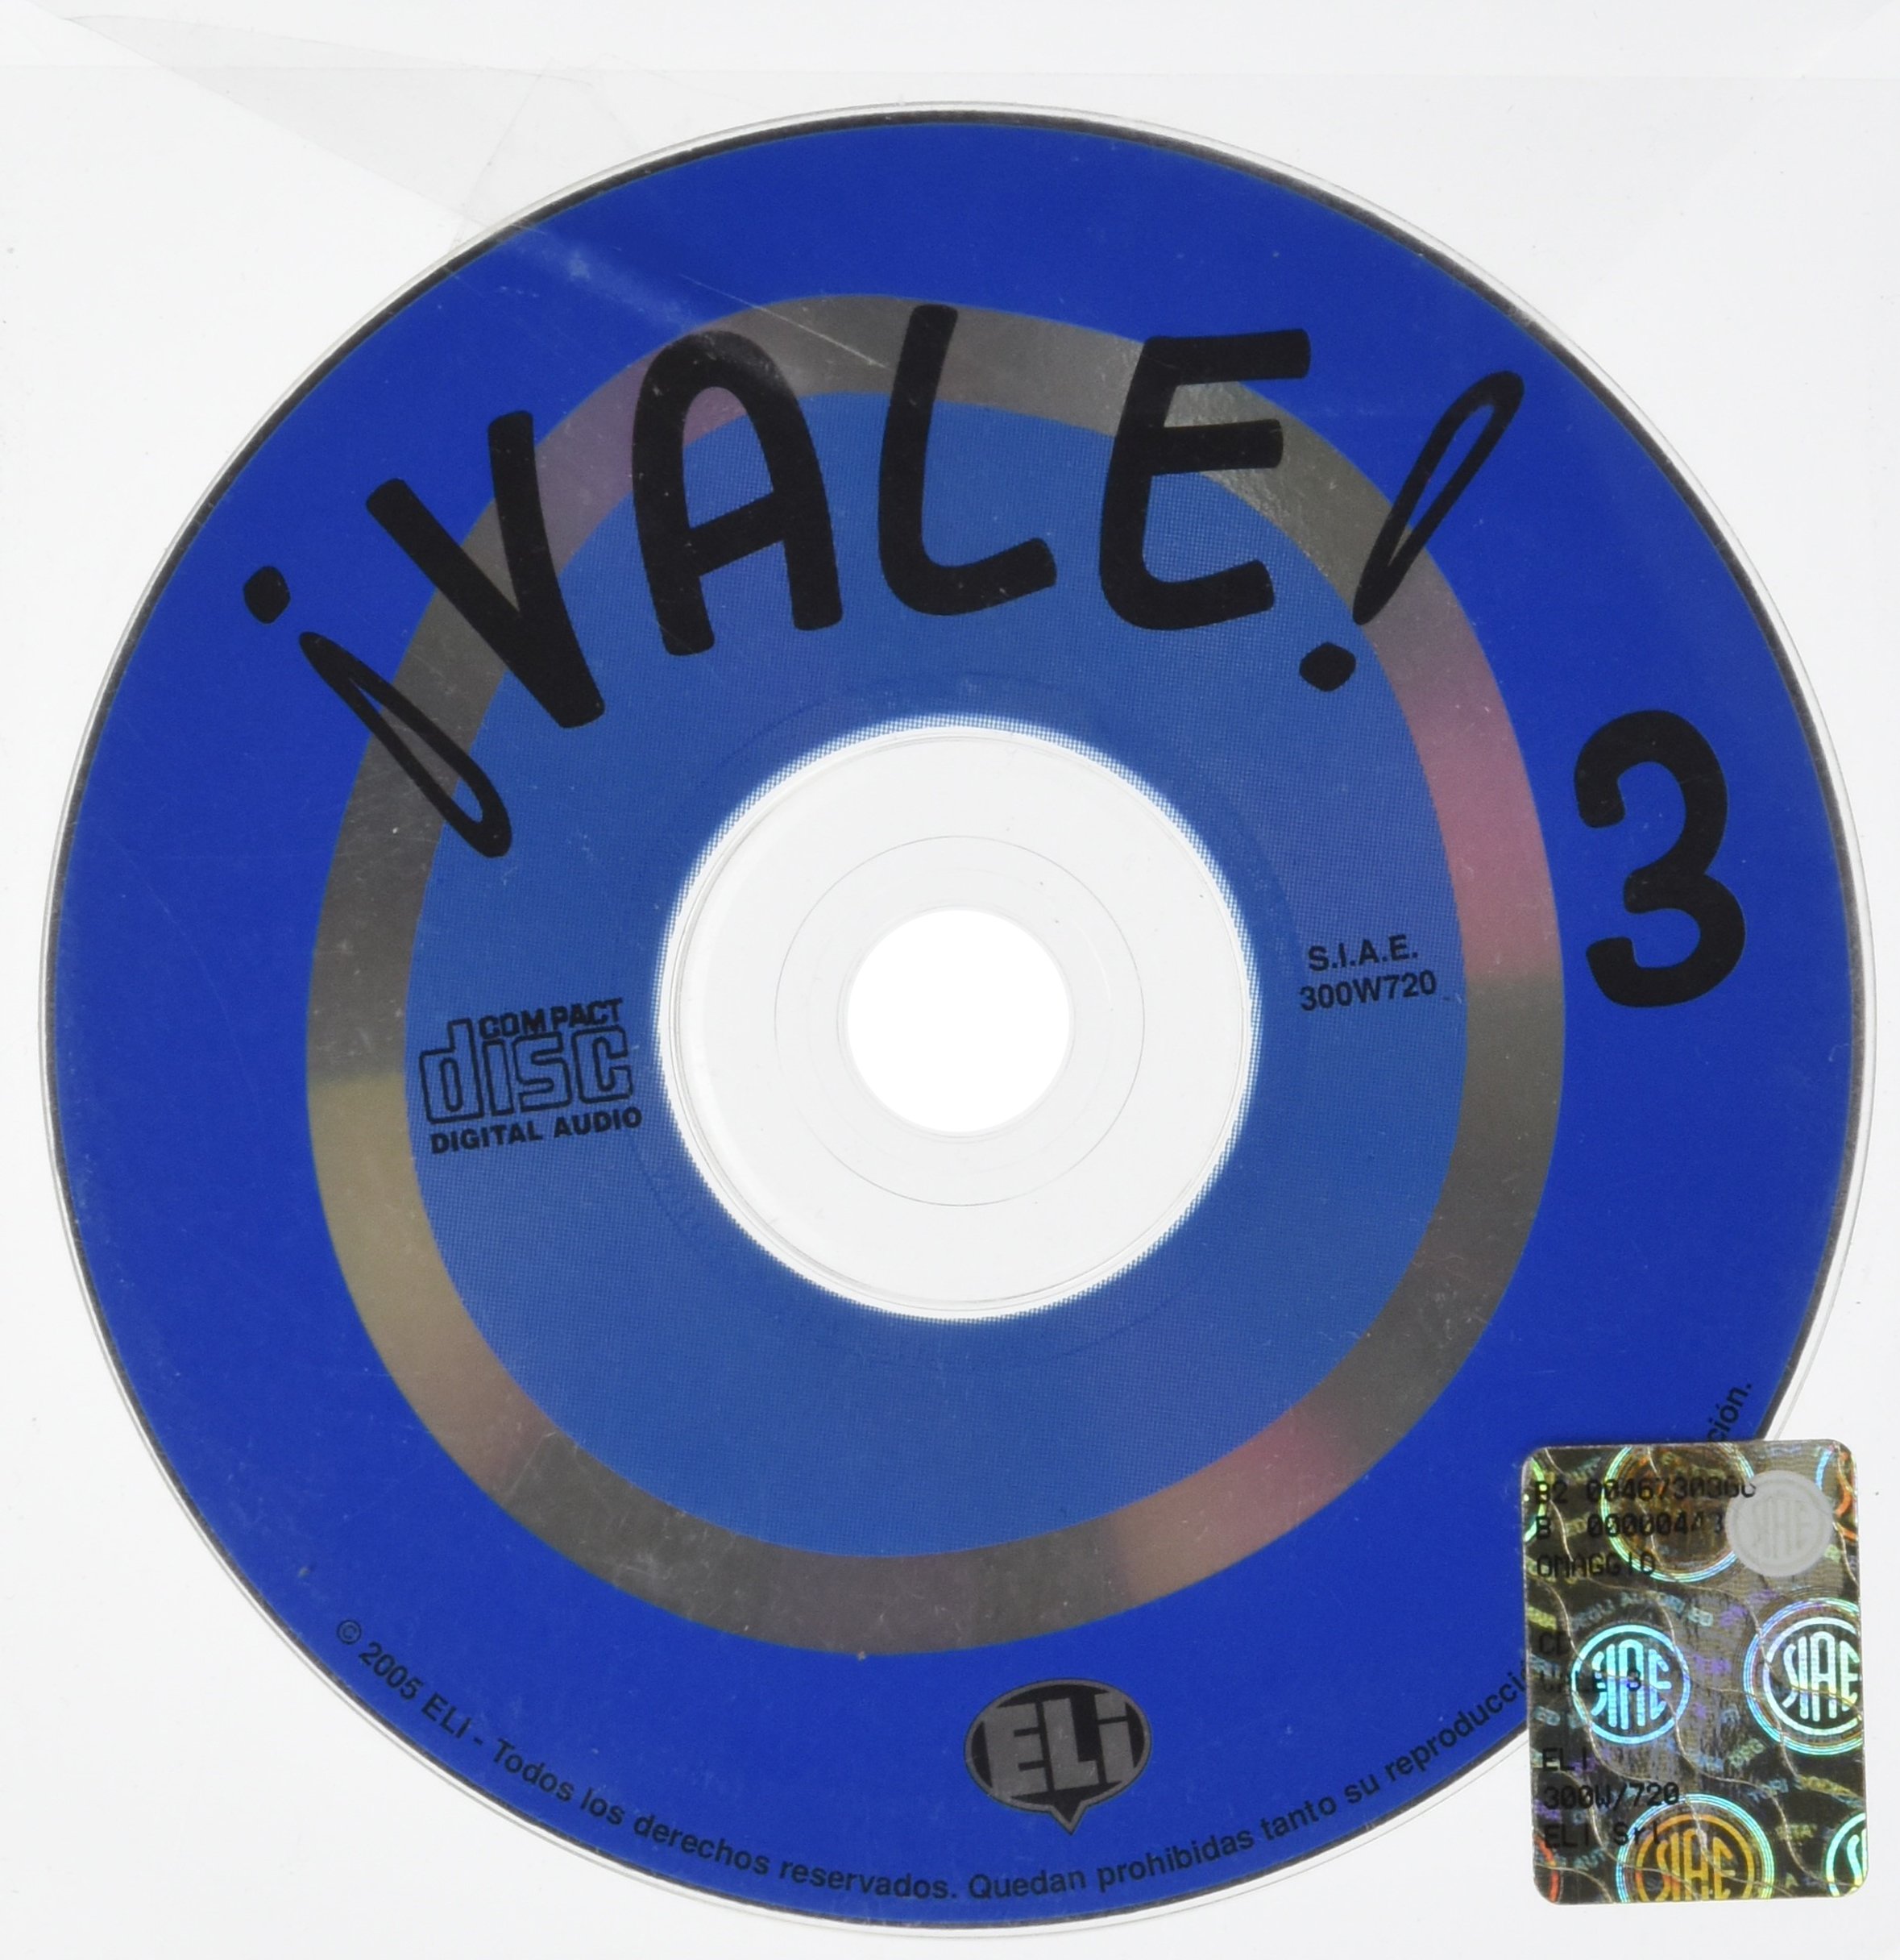 VALE 3 AUDIO CD